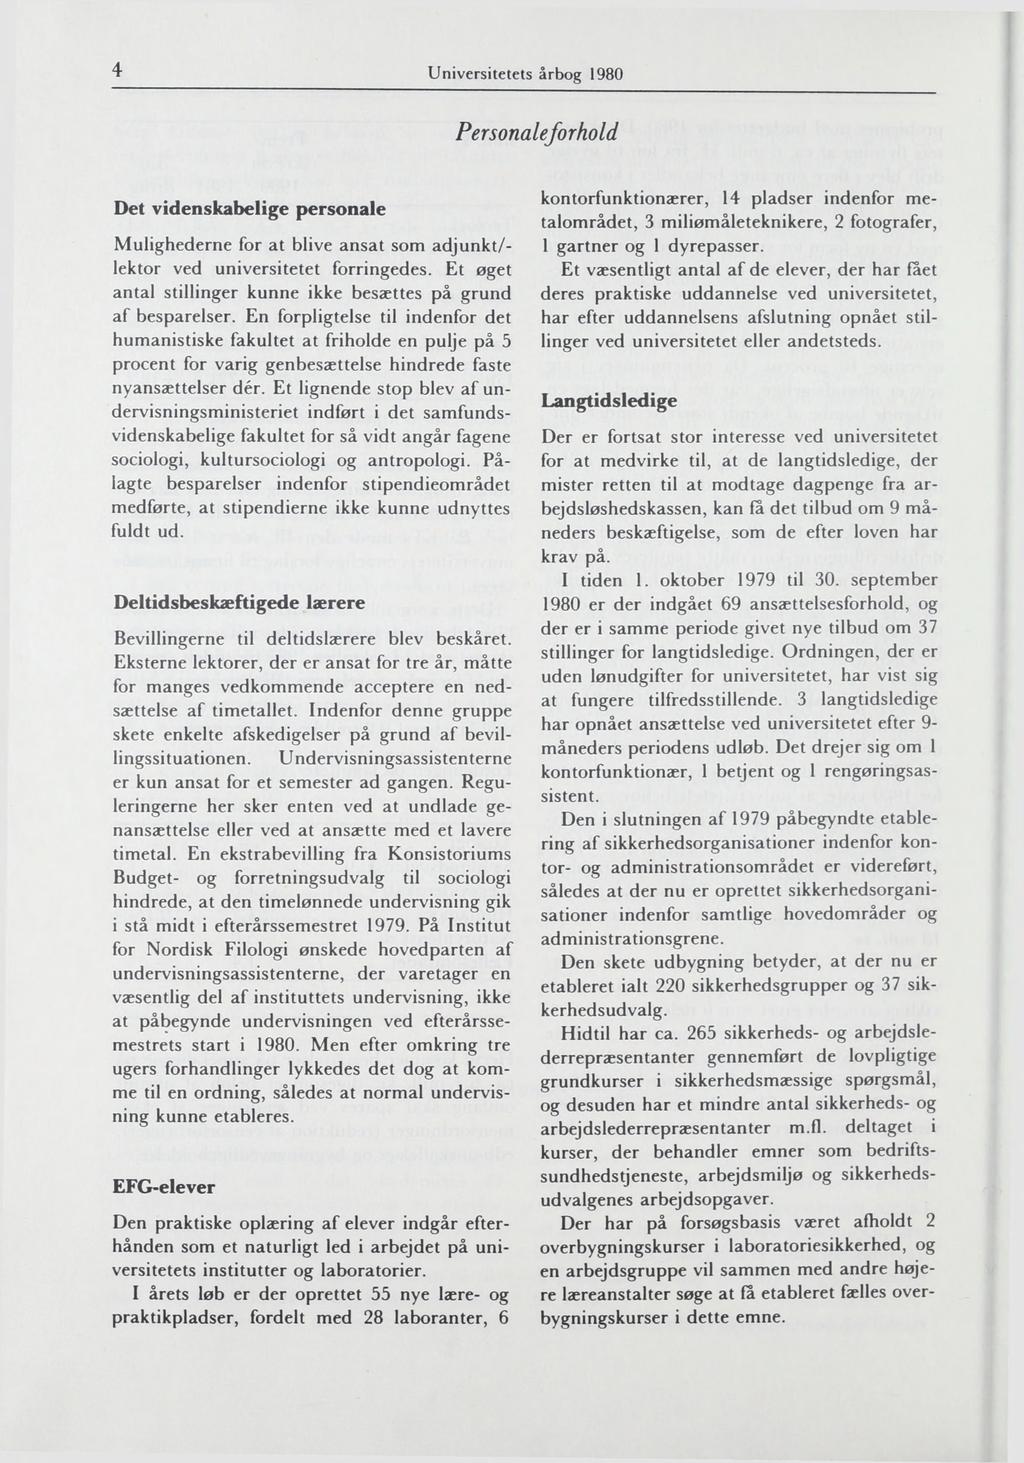 4 Universitetets årbog 1980 Personaleforhold Det videnskabelige personale Mulighederne for at blive ansat som adjunkt/- lektor ved universitetet forringedes.